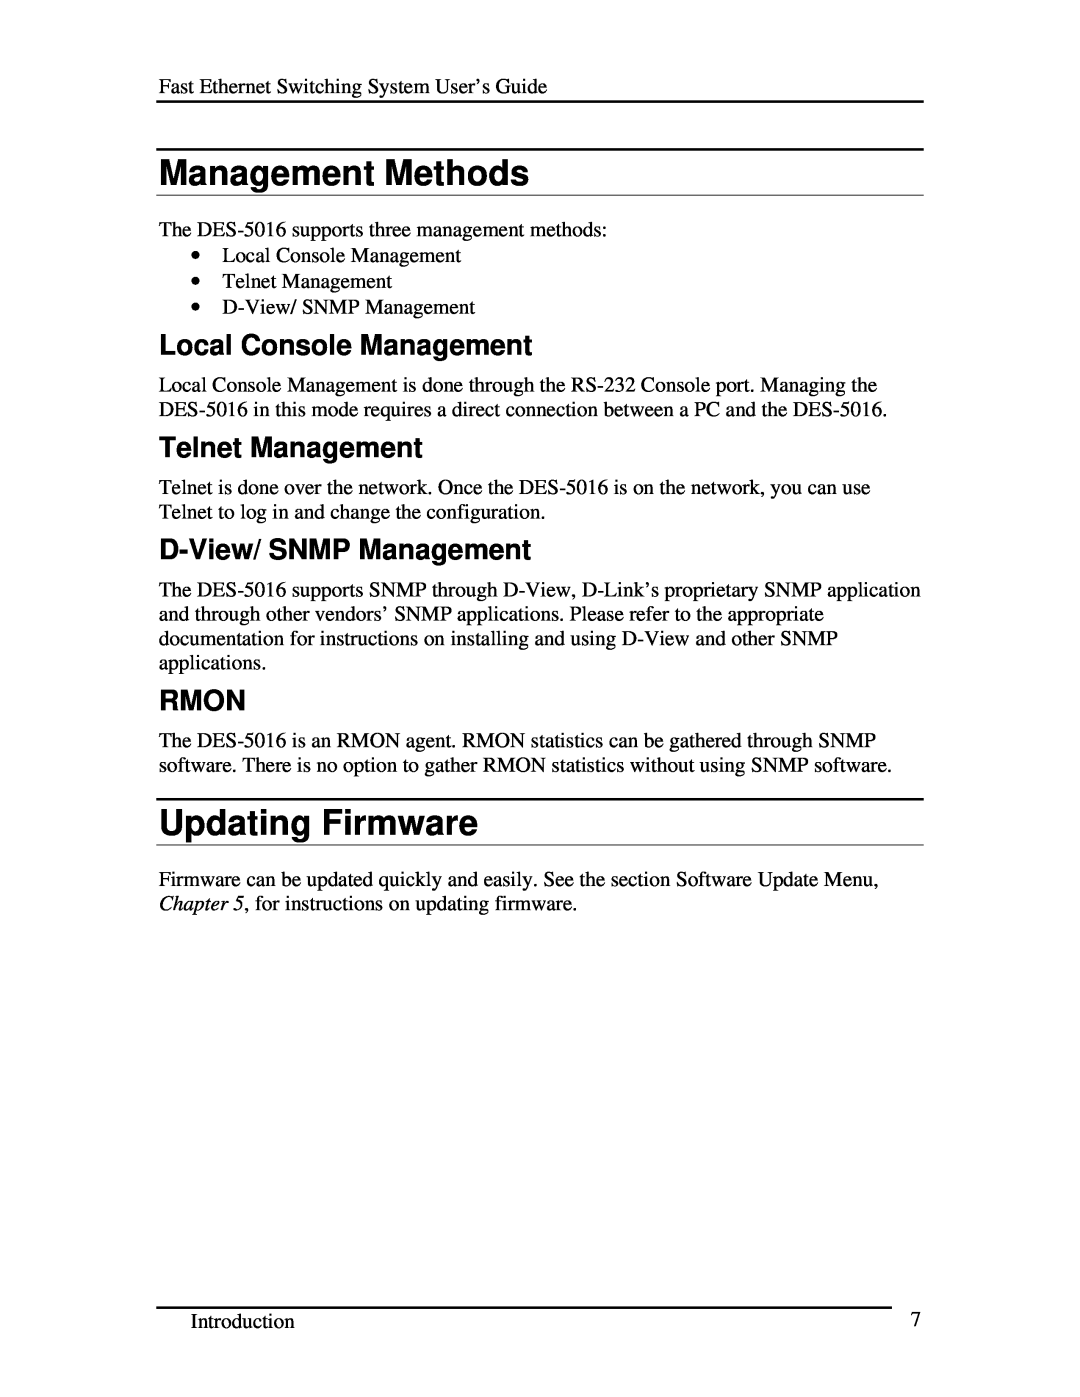 D-Link DES-5016 manual Management Methods, Updating Firmware, Local Console Management, Telnet Management, Rmon 